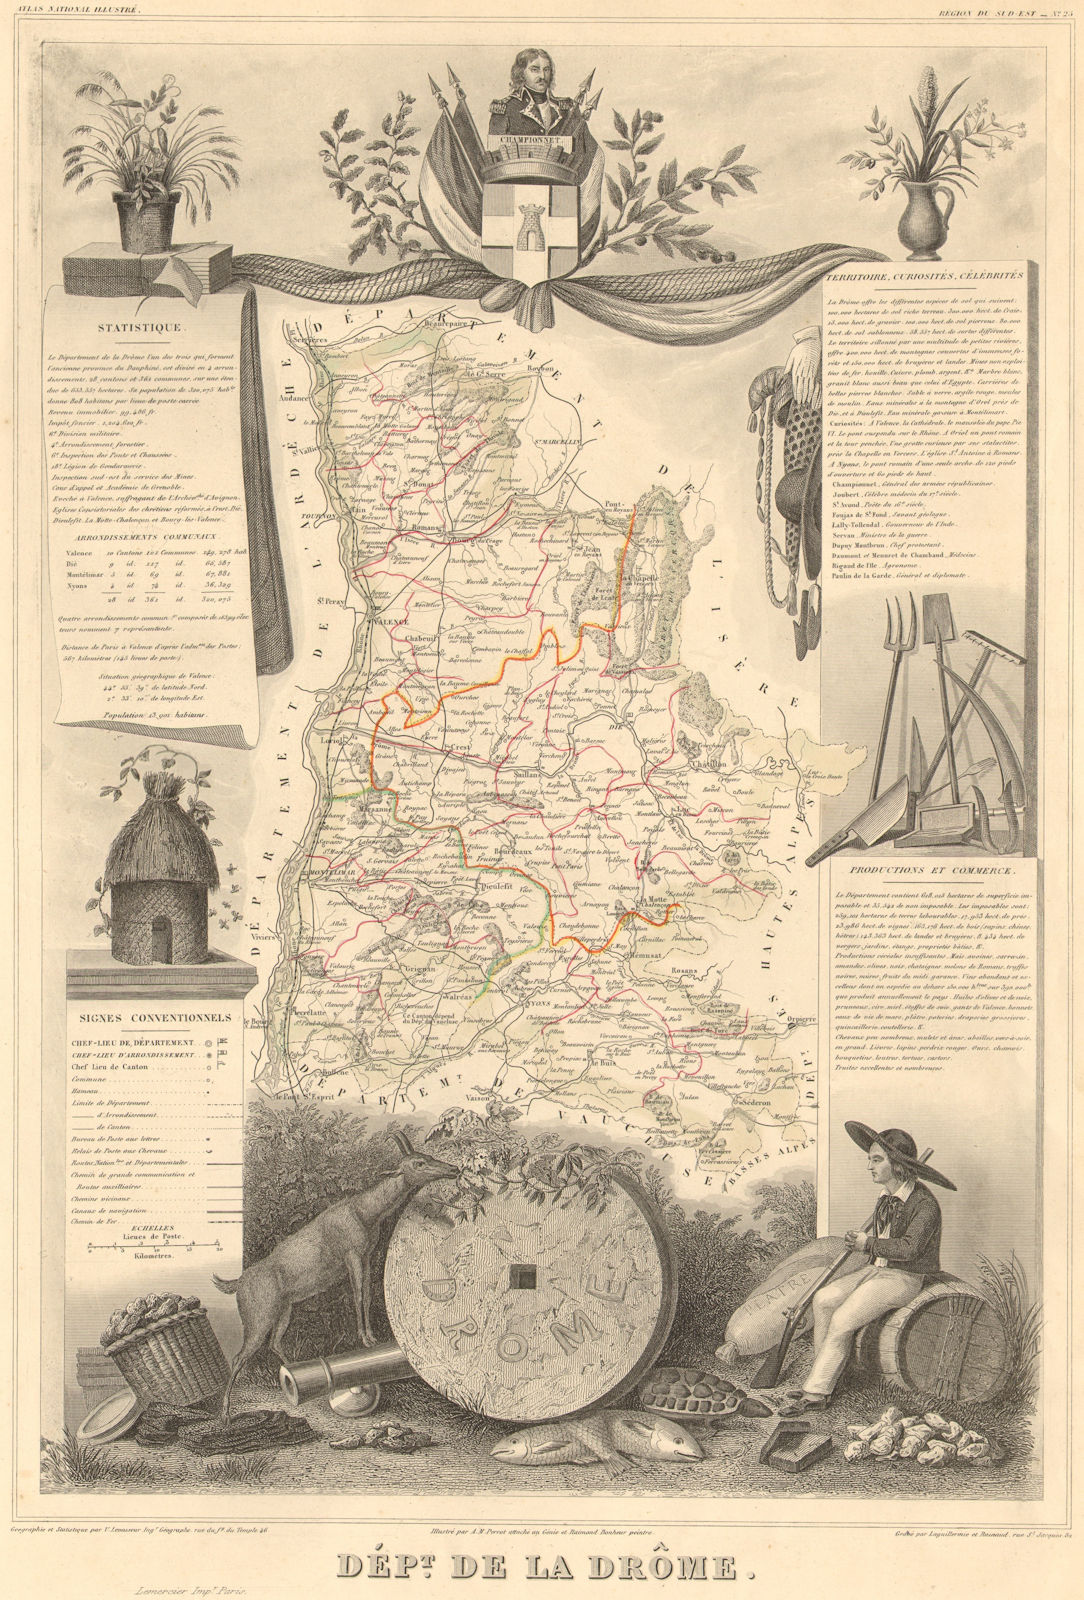 Département de la DRÔME. Decorative antique map/carte by Victor LEVASSEUR 1852